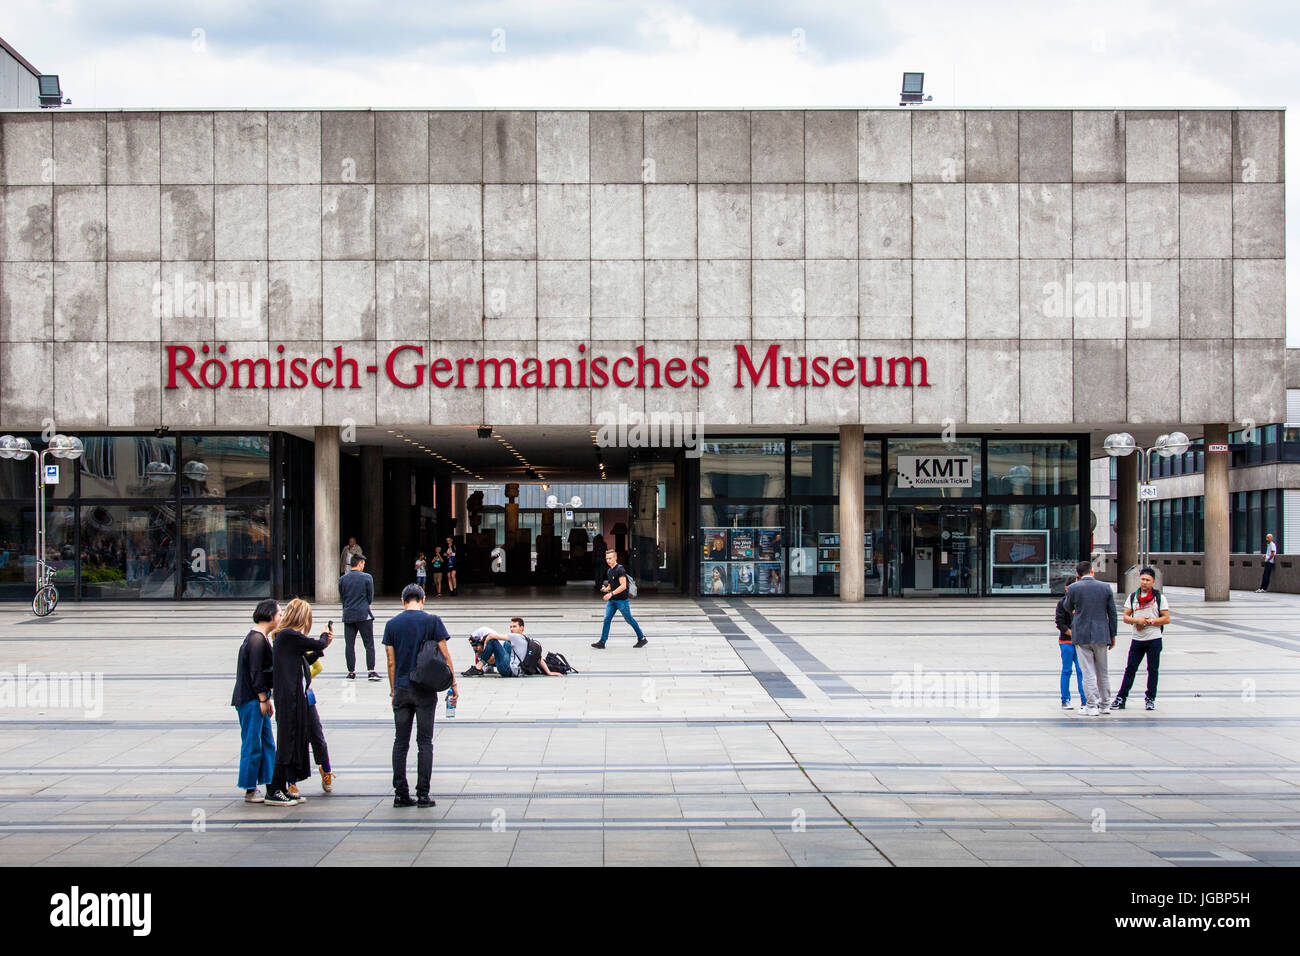 L'Europe, l'Allemagne, en Rhénanie du Nord-Westphalie, Cologne, le musée romain-germanique à la place Roncalli. Banque D'Images